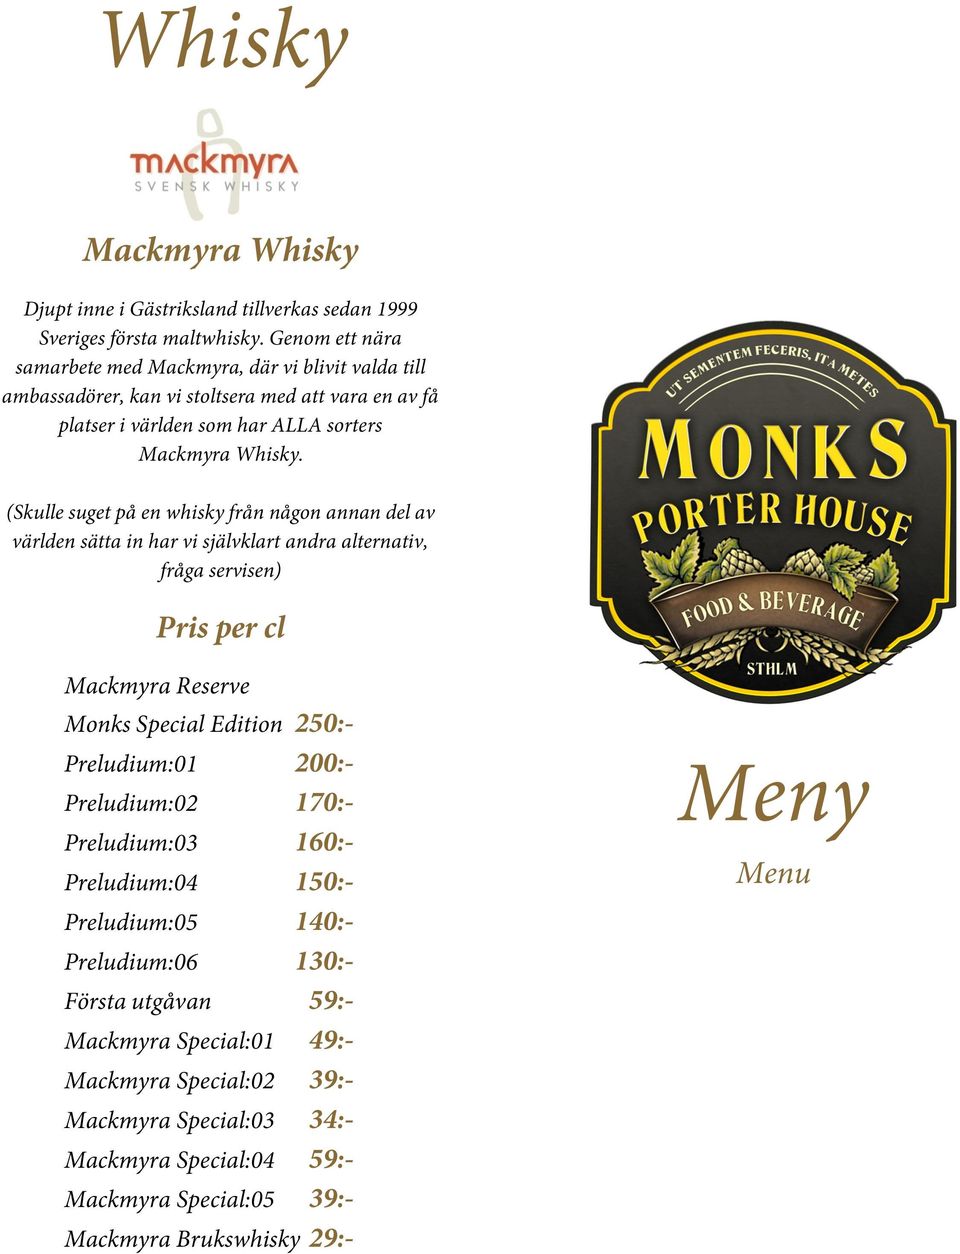 (Skulle suget på en whisky från någon annan del av världen sätta in har vi självklart andra alternativ, fråga servisen) Pris per cl Mackmyra Reserve Monks Special Edition 250:-